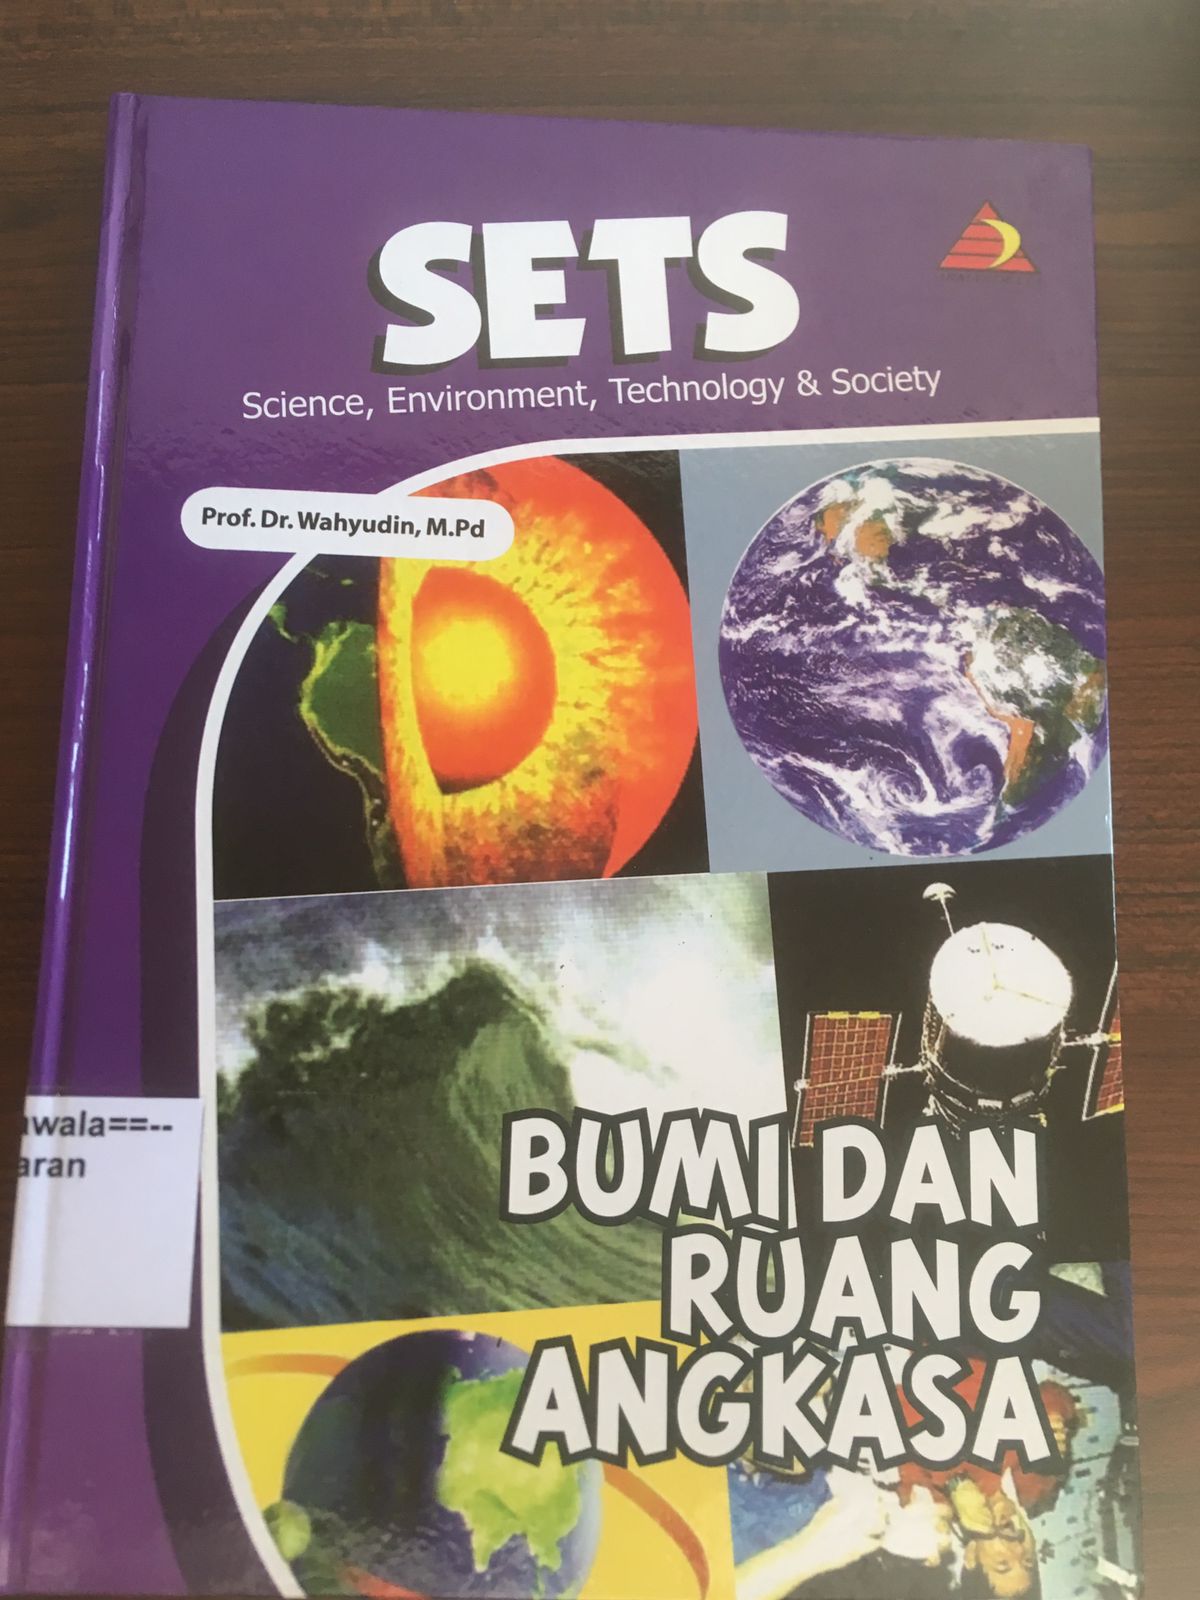 SETS (Science, Environment, Technology & Society): Bumi dan Ruang Angkasa